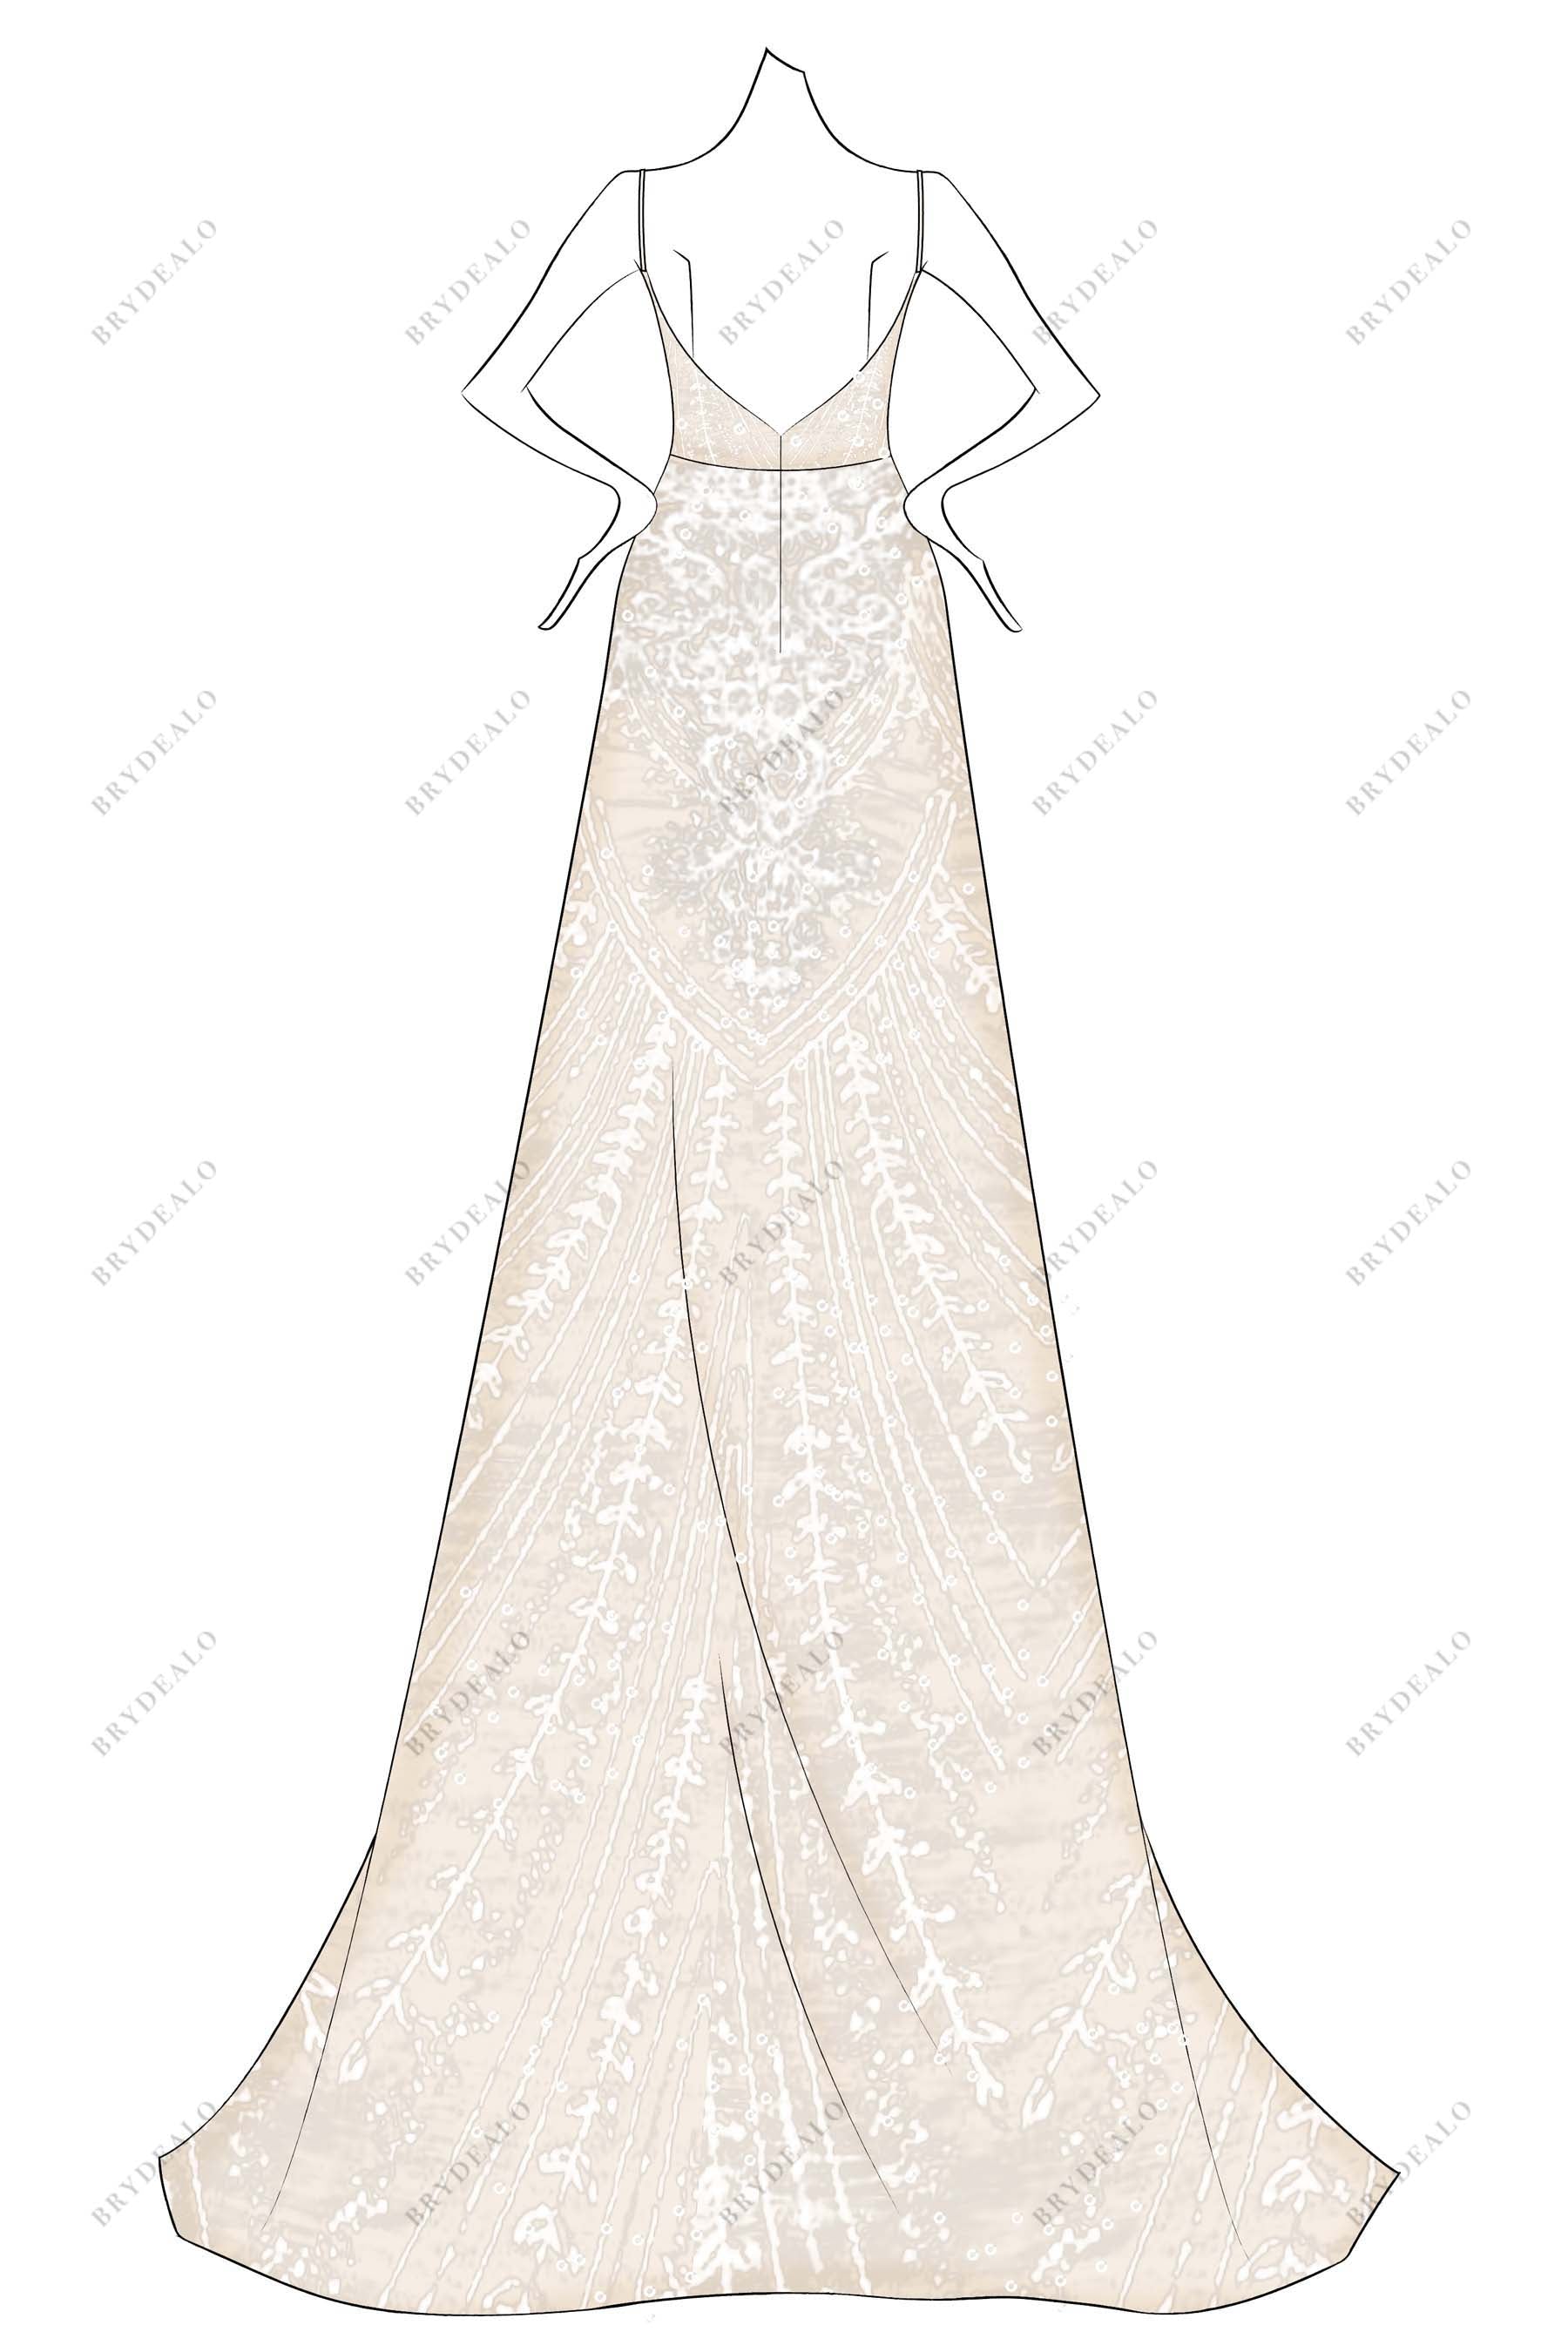 ivory lace overlaid oyster designer weddin dress sketch